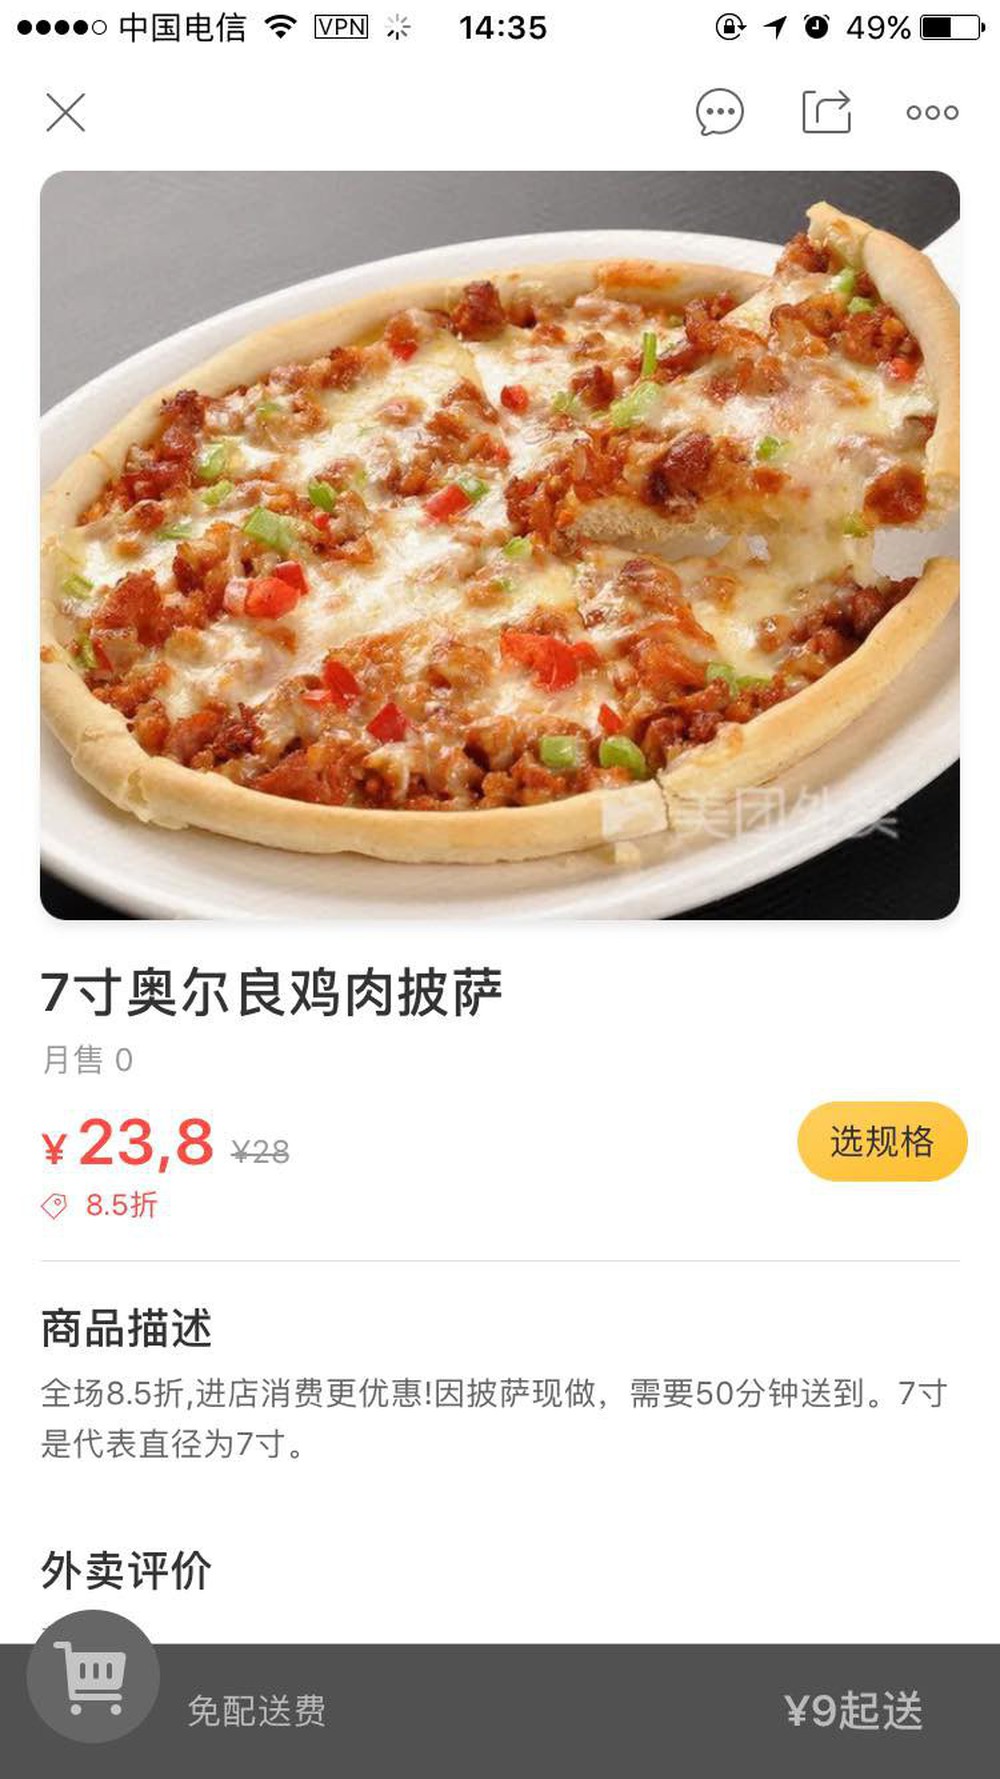 Háo hức đặt mua pizza vừa to vừa rẻ trên mạng, cô bạn du học sinh nhận được một thứ rất khó hiểu - Ảnh 1.